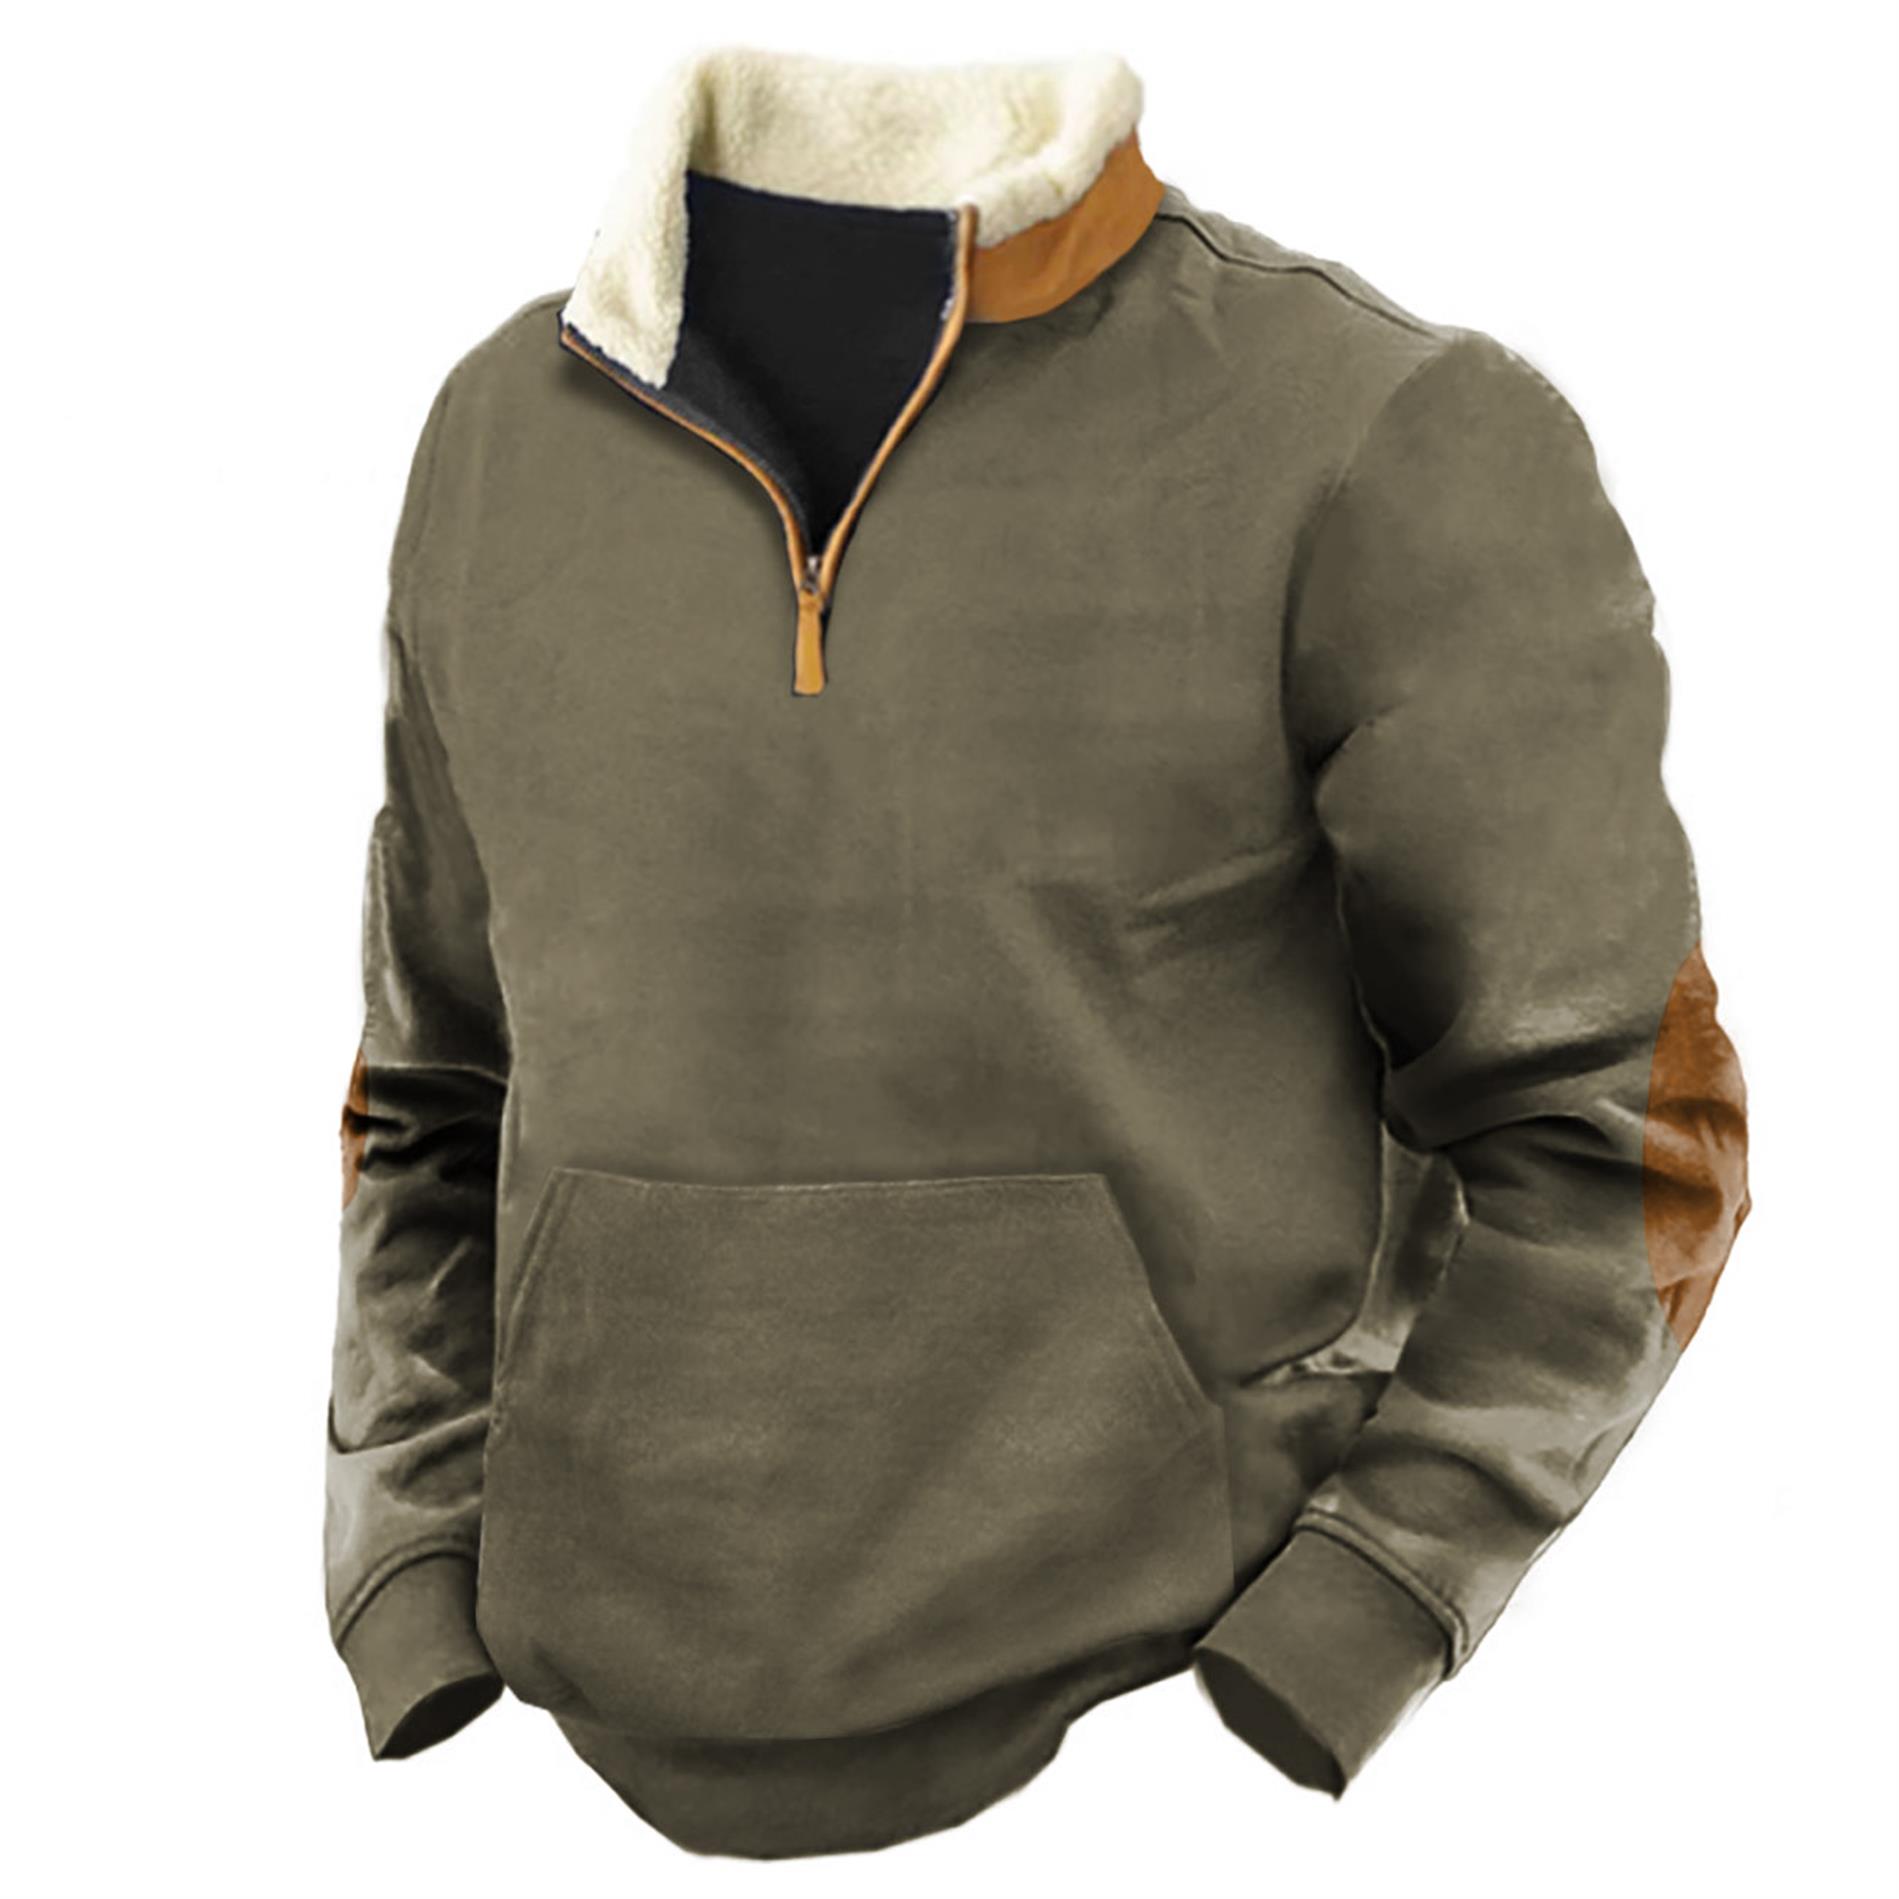 Men's Outdoor Tactical Quarter Chic Pocket Zip Sweatshirt